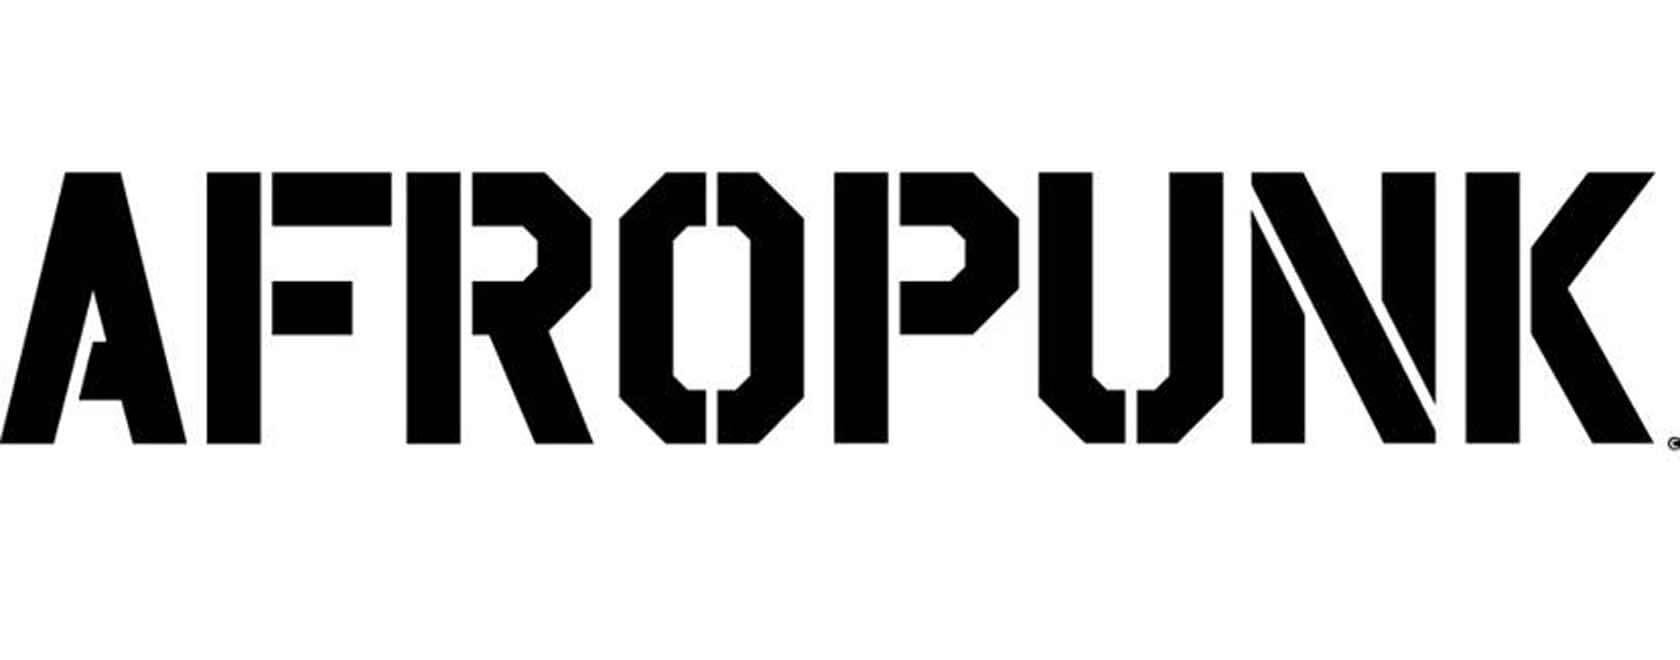 afropunk-logo1-1.jpg